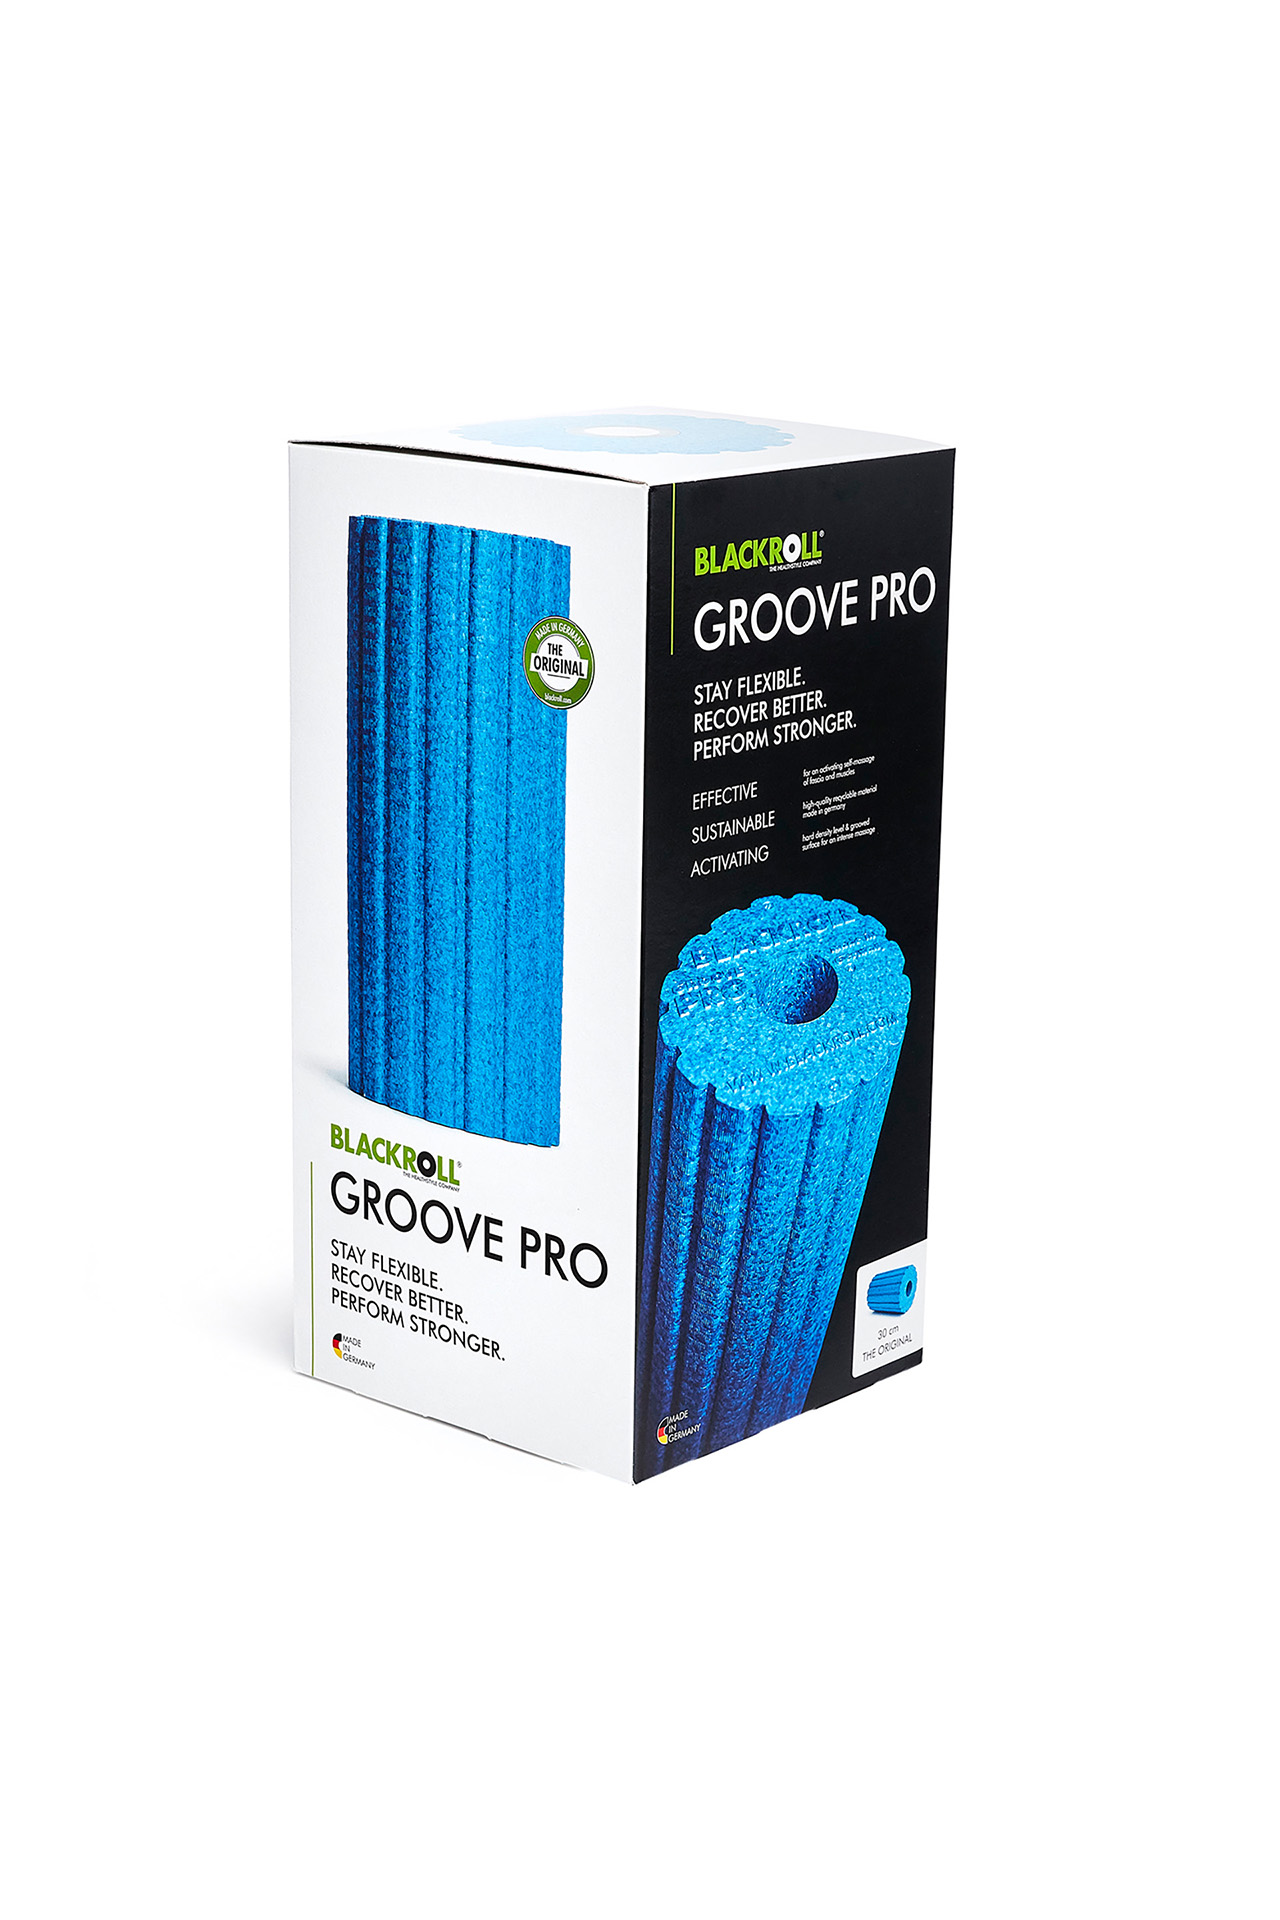 blackroll groove pro blau azur rolle fengbao kung fu shop 1080 wien verpackung